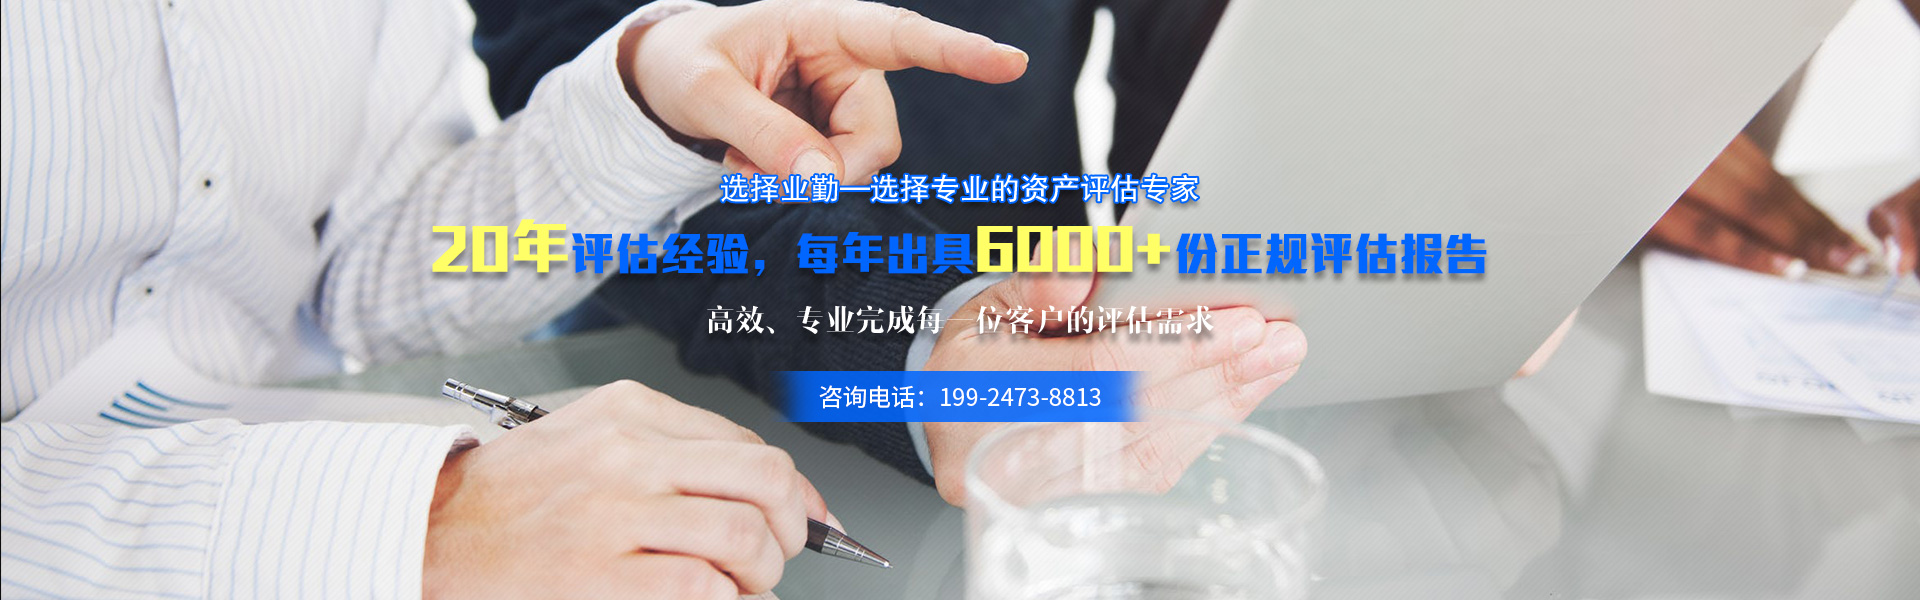 广州资产评估公司选择业勤资产评估,专业高效